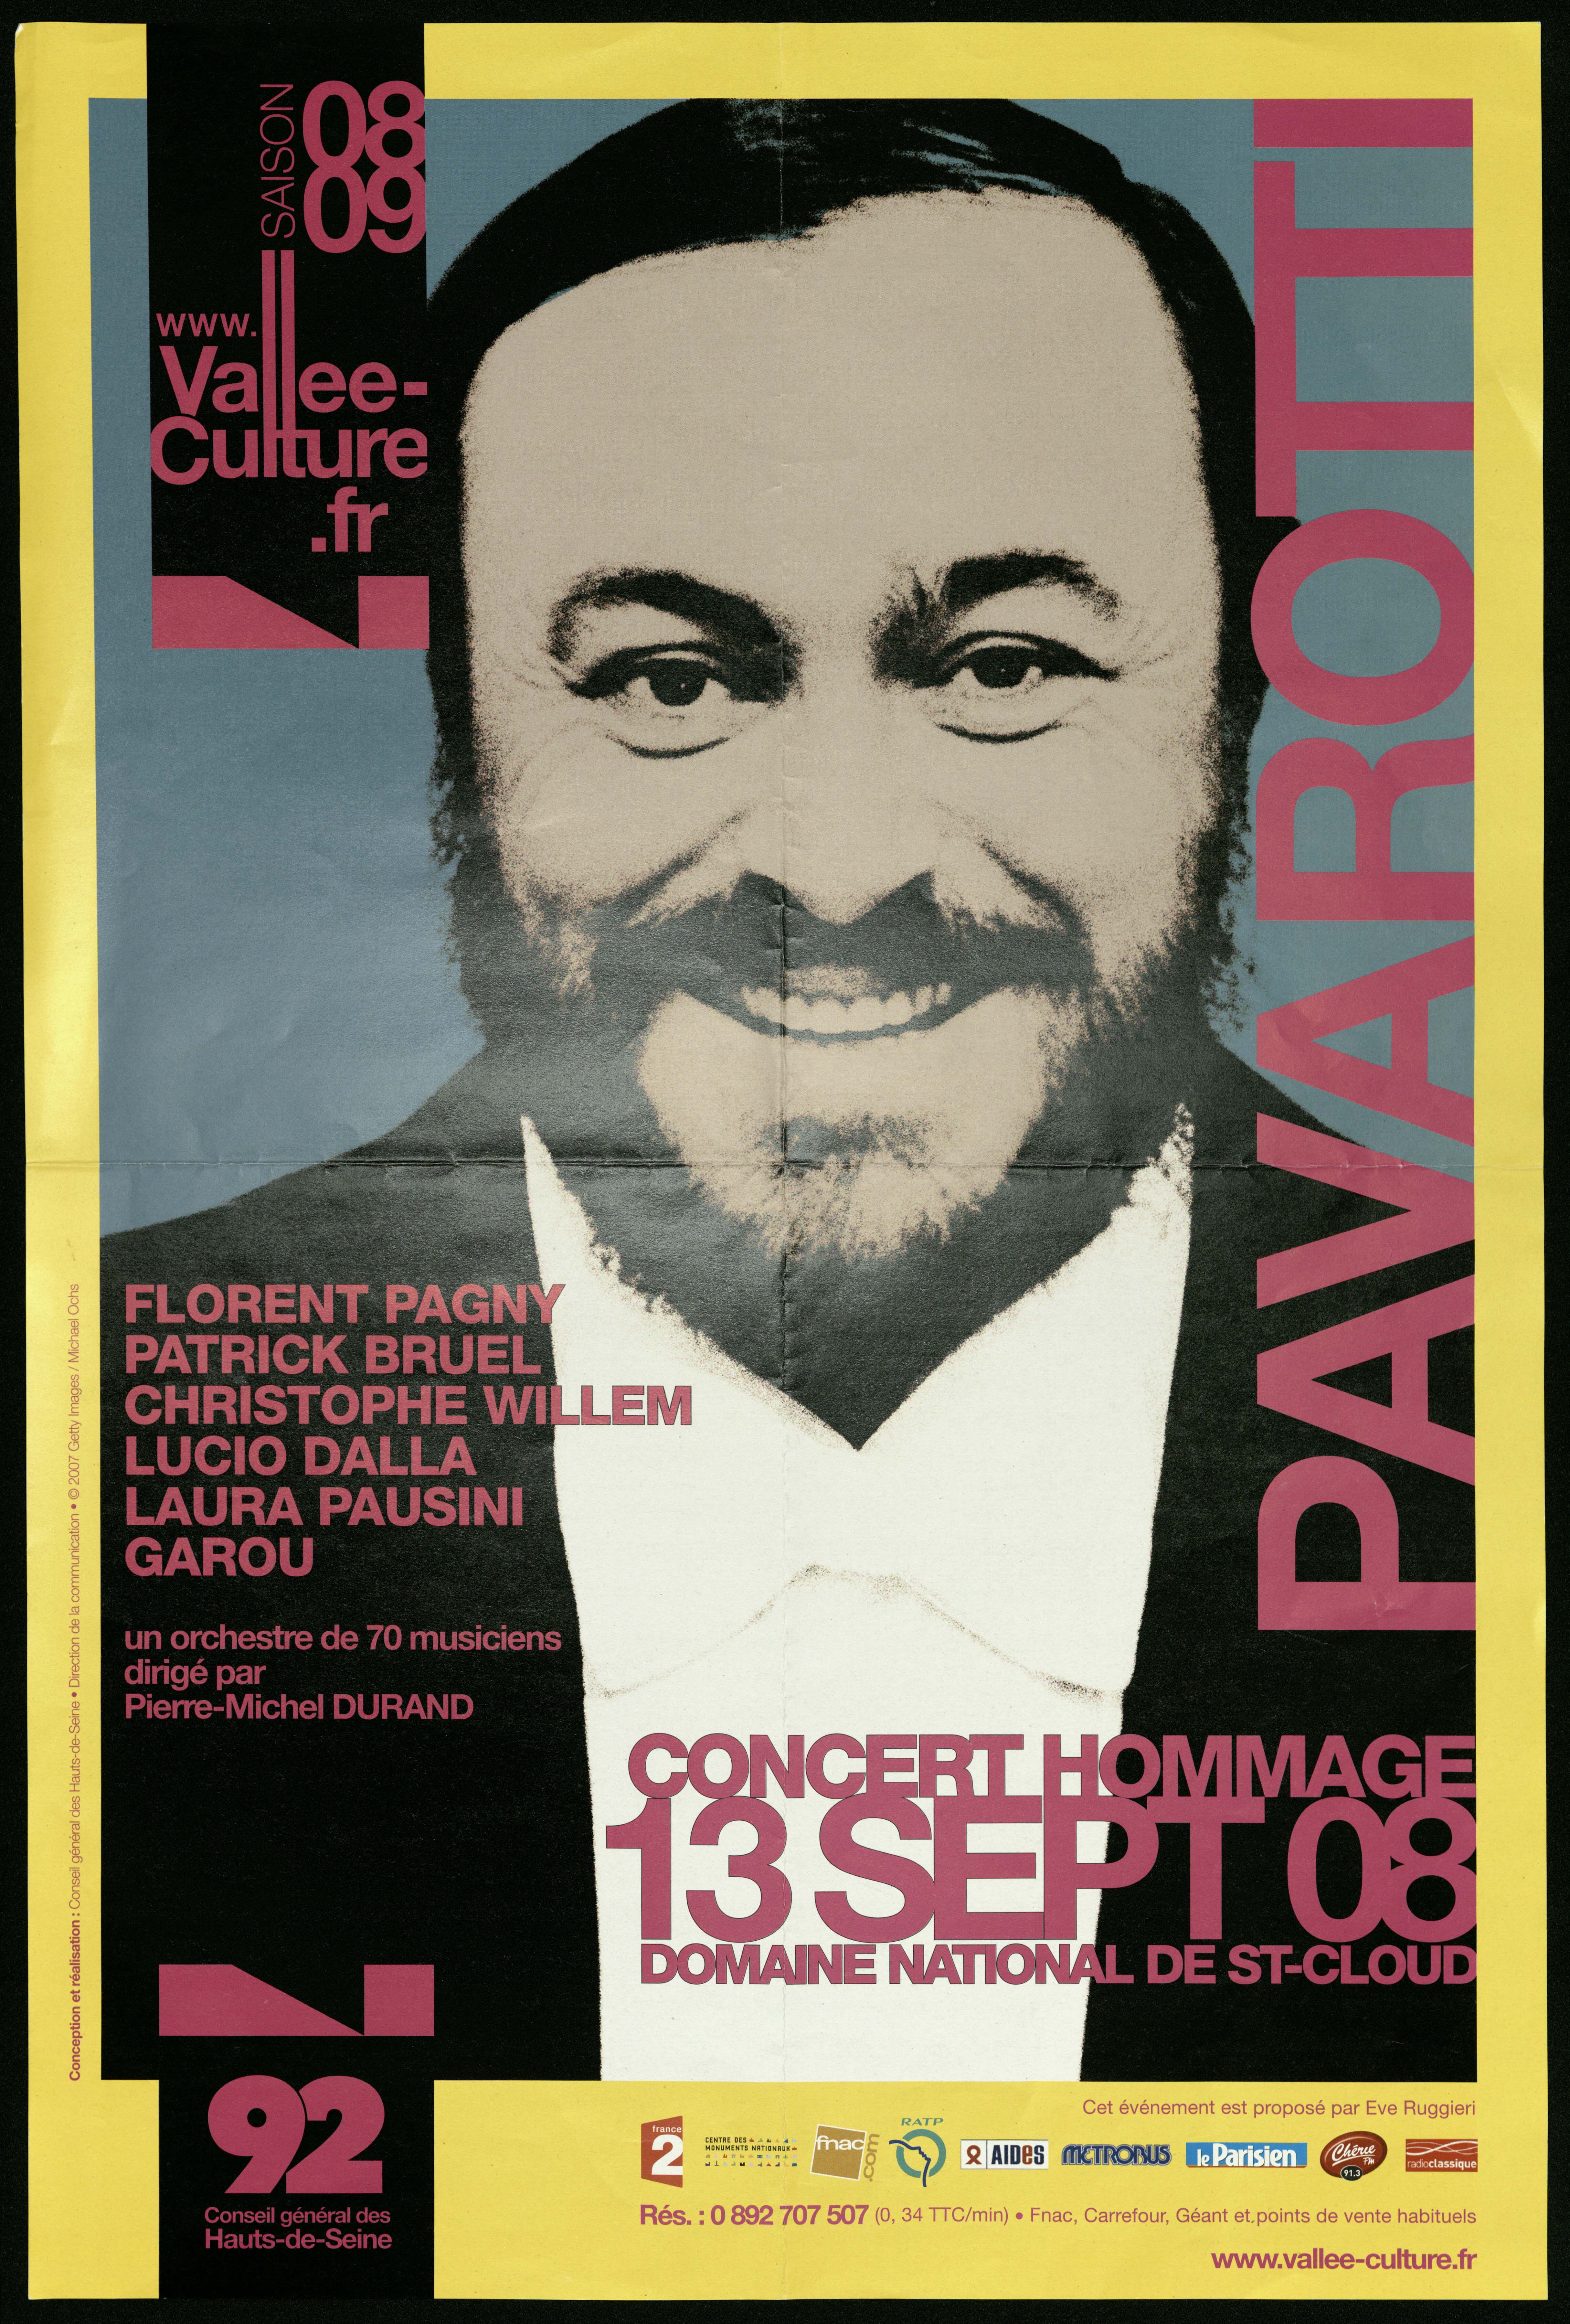 Vallée Culture 08-09. Concert hommage à Pavarotti  13 septembre 2008. Domaine national de Saint-Cloud. Florent Pagny, Patrick Bruel… /Mickael Ochs. - CG 92, 2008. - 1 affiche ill.coul., 60 x 40 cm.